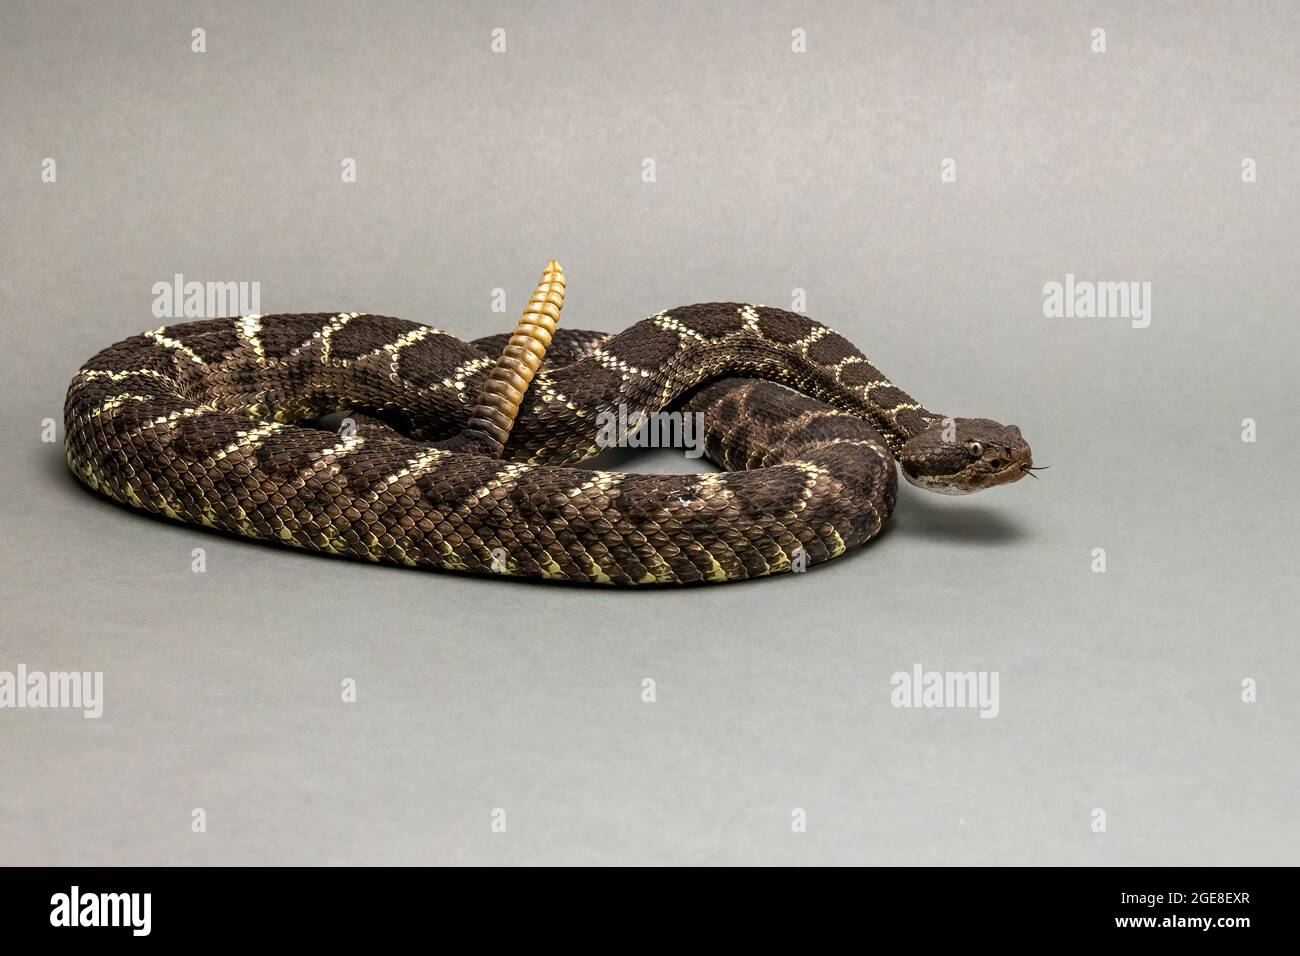 Arizona Black Rattlesnake Isolated on Grey Background Stock Photo